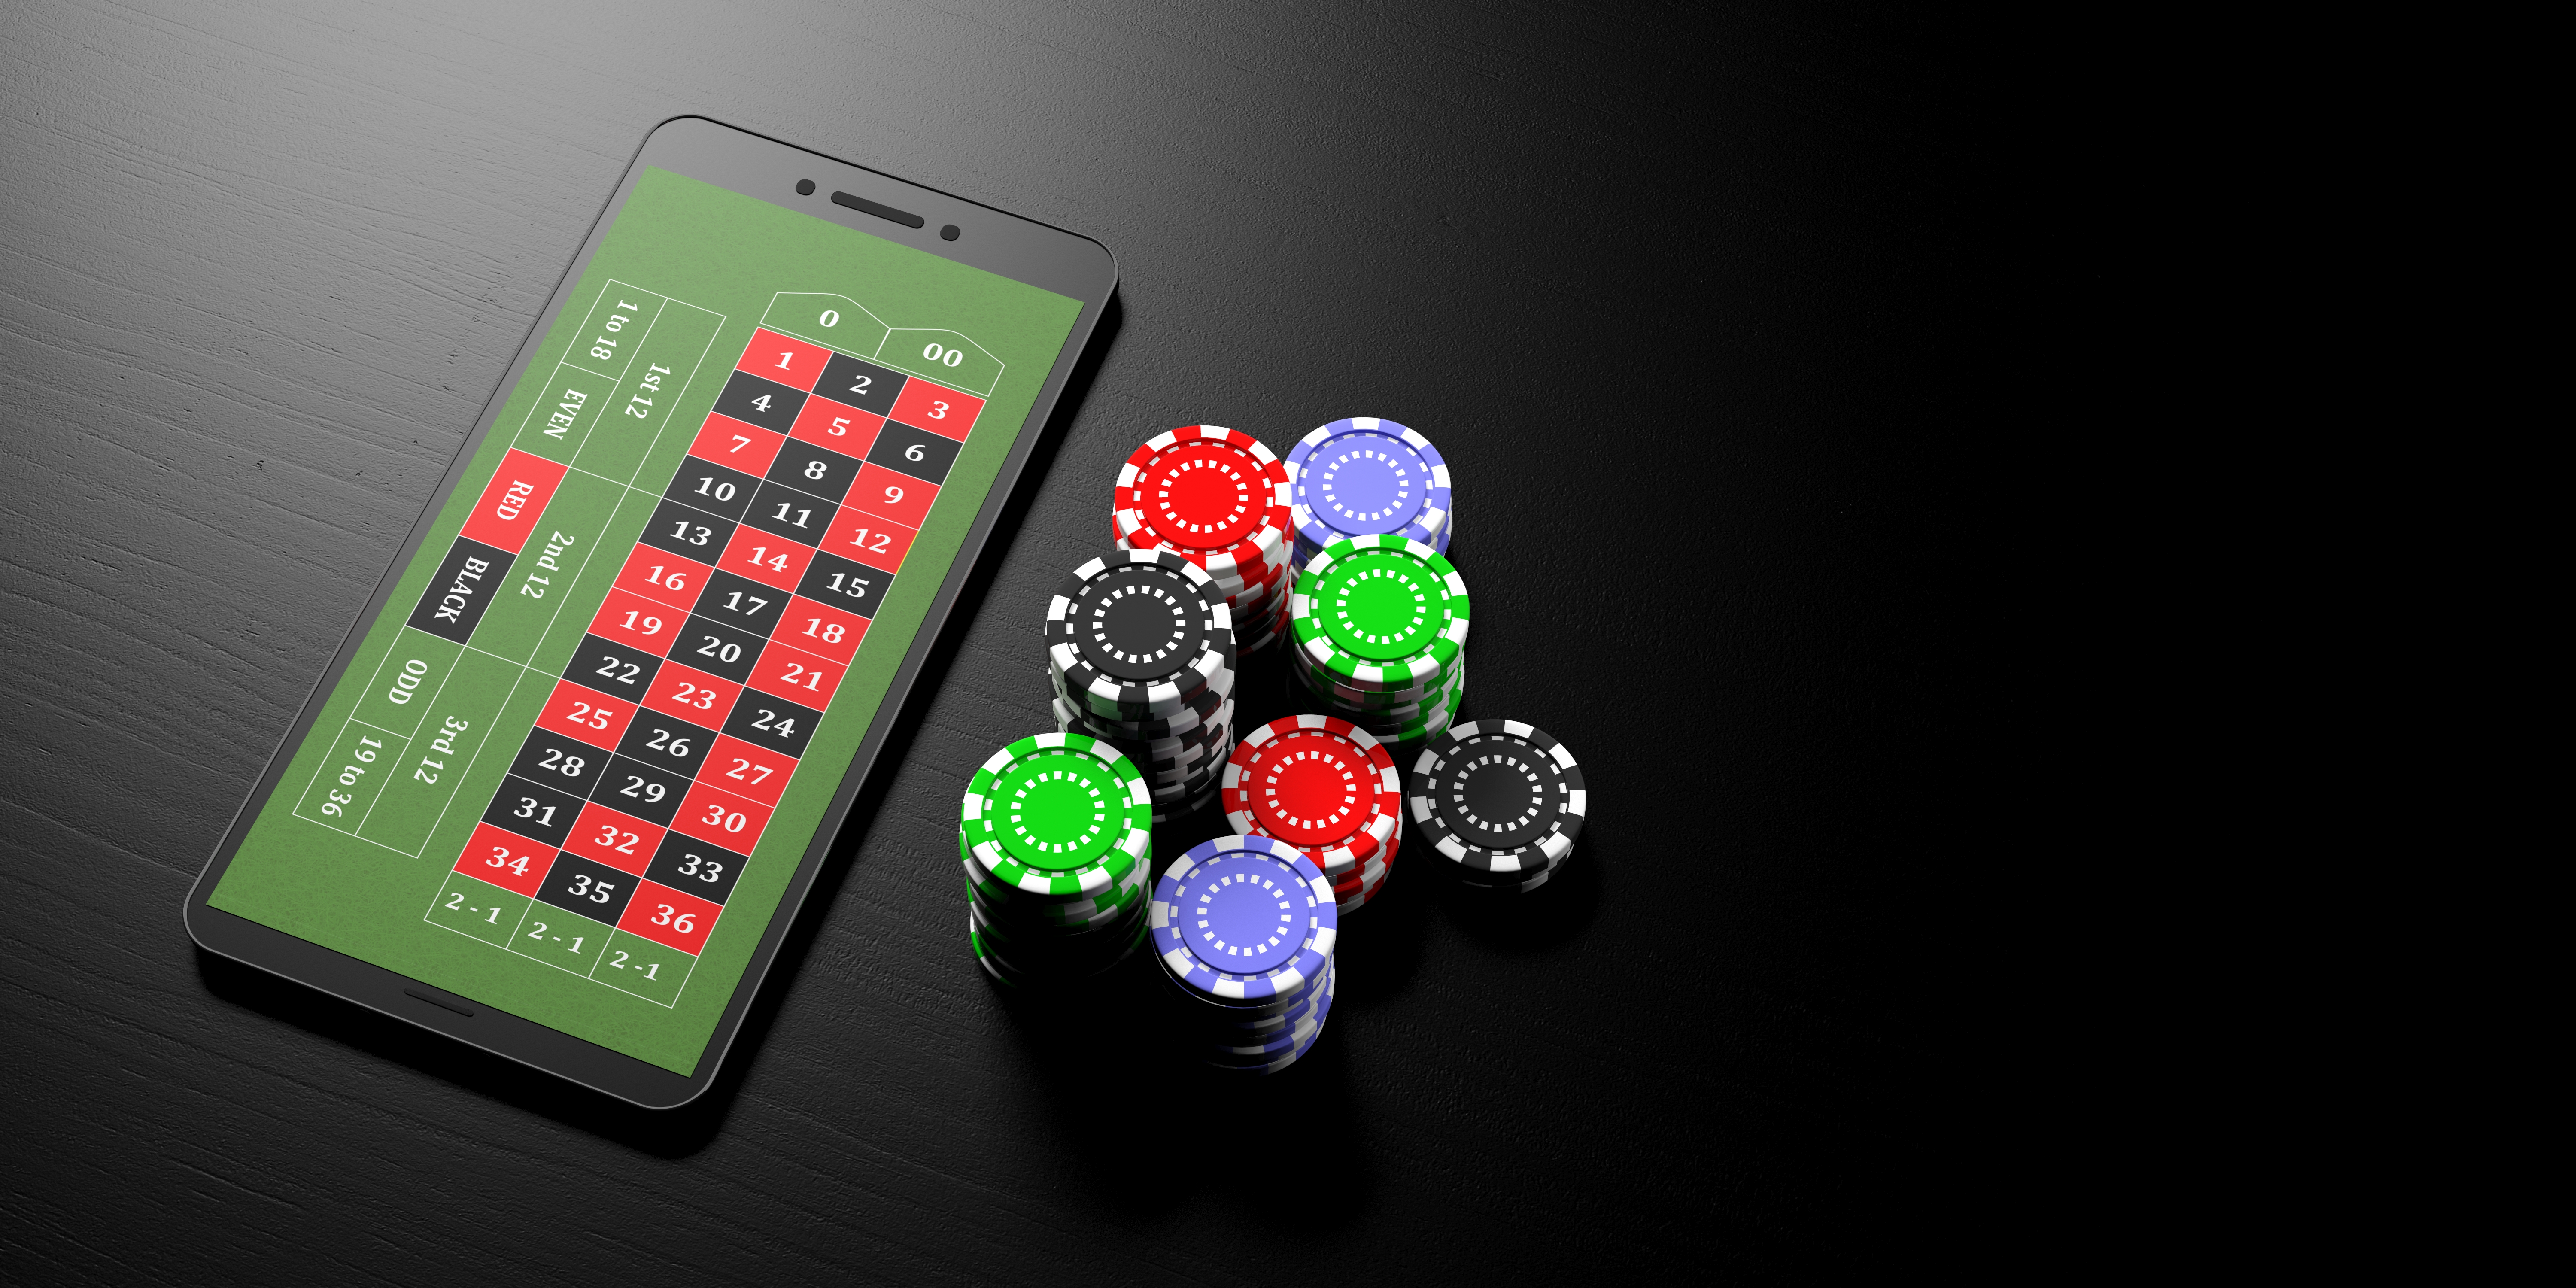 mobile casino sites